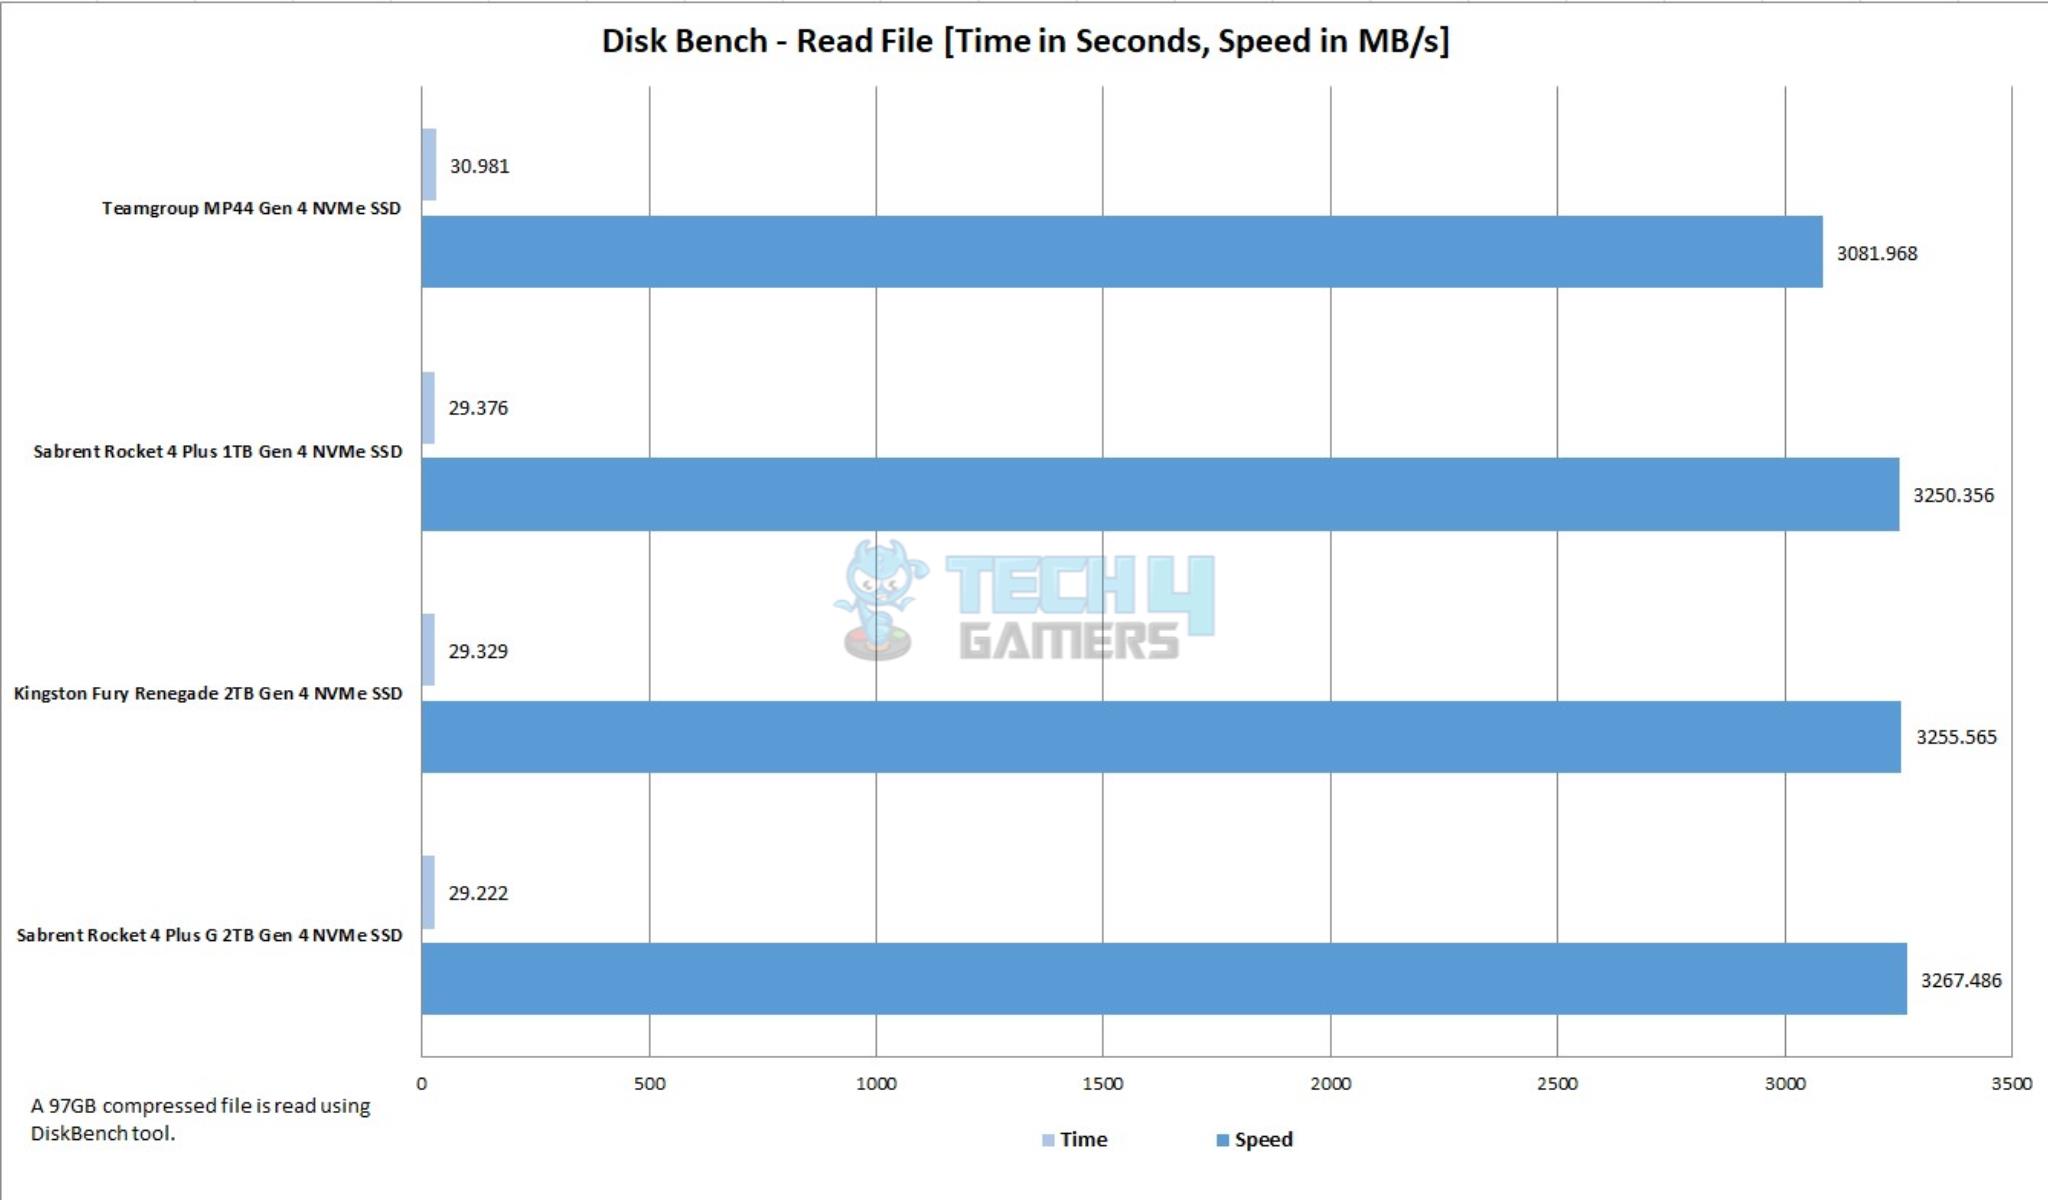 Sabrent Rocket 4 Plus G 2TB NVMe SSD — Disk Bench Read File